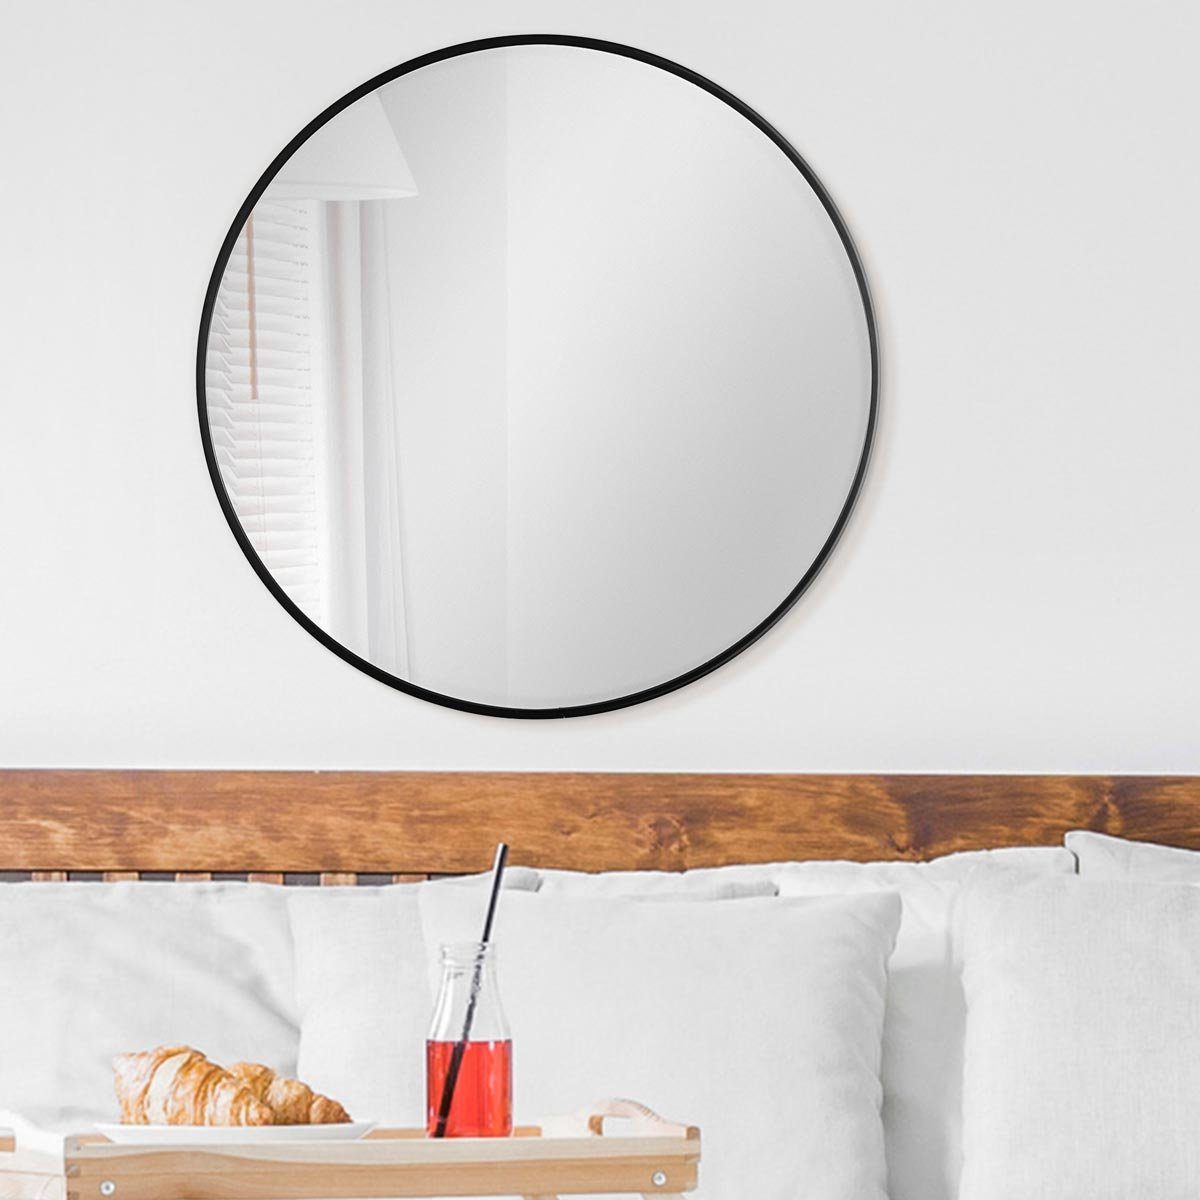 PHOTOLINI Spiegel eleganter Schwarz schmaler Rahmen Wandspiegel, rund mit Metallrahmen,